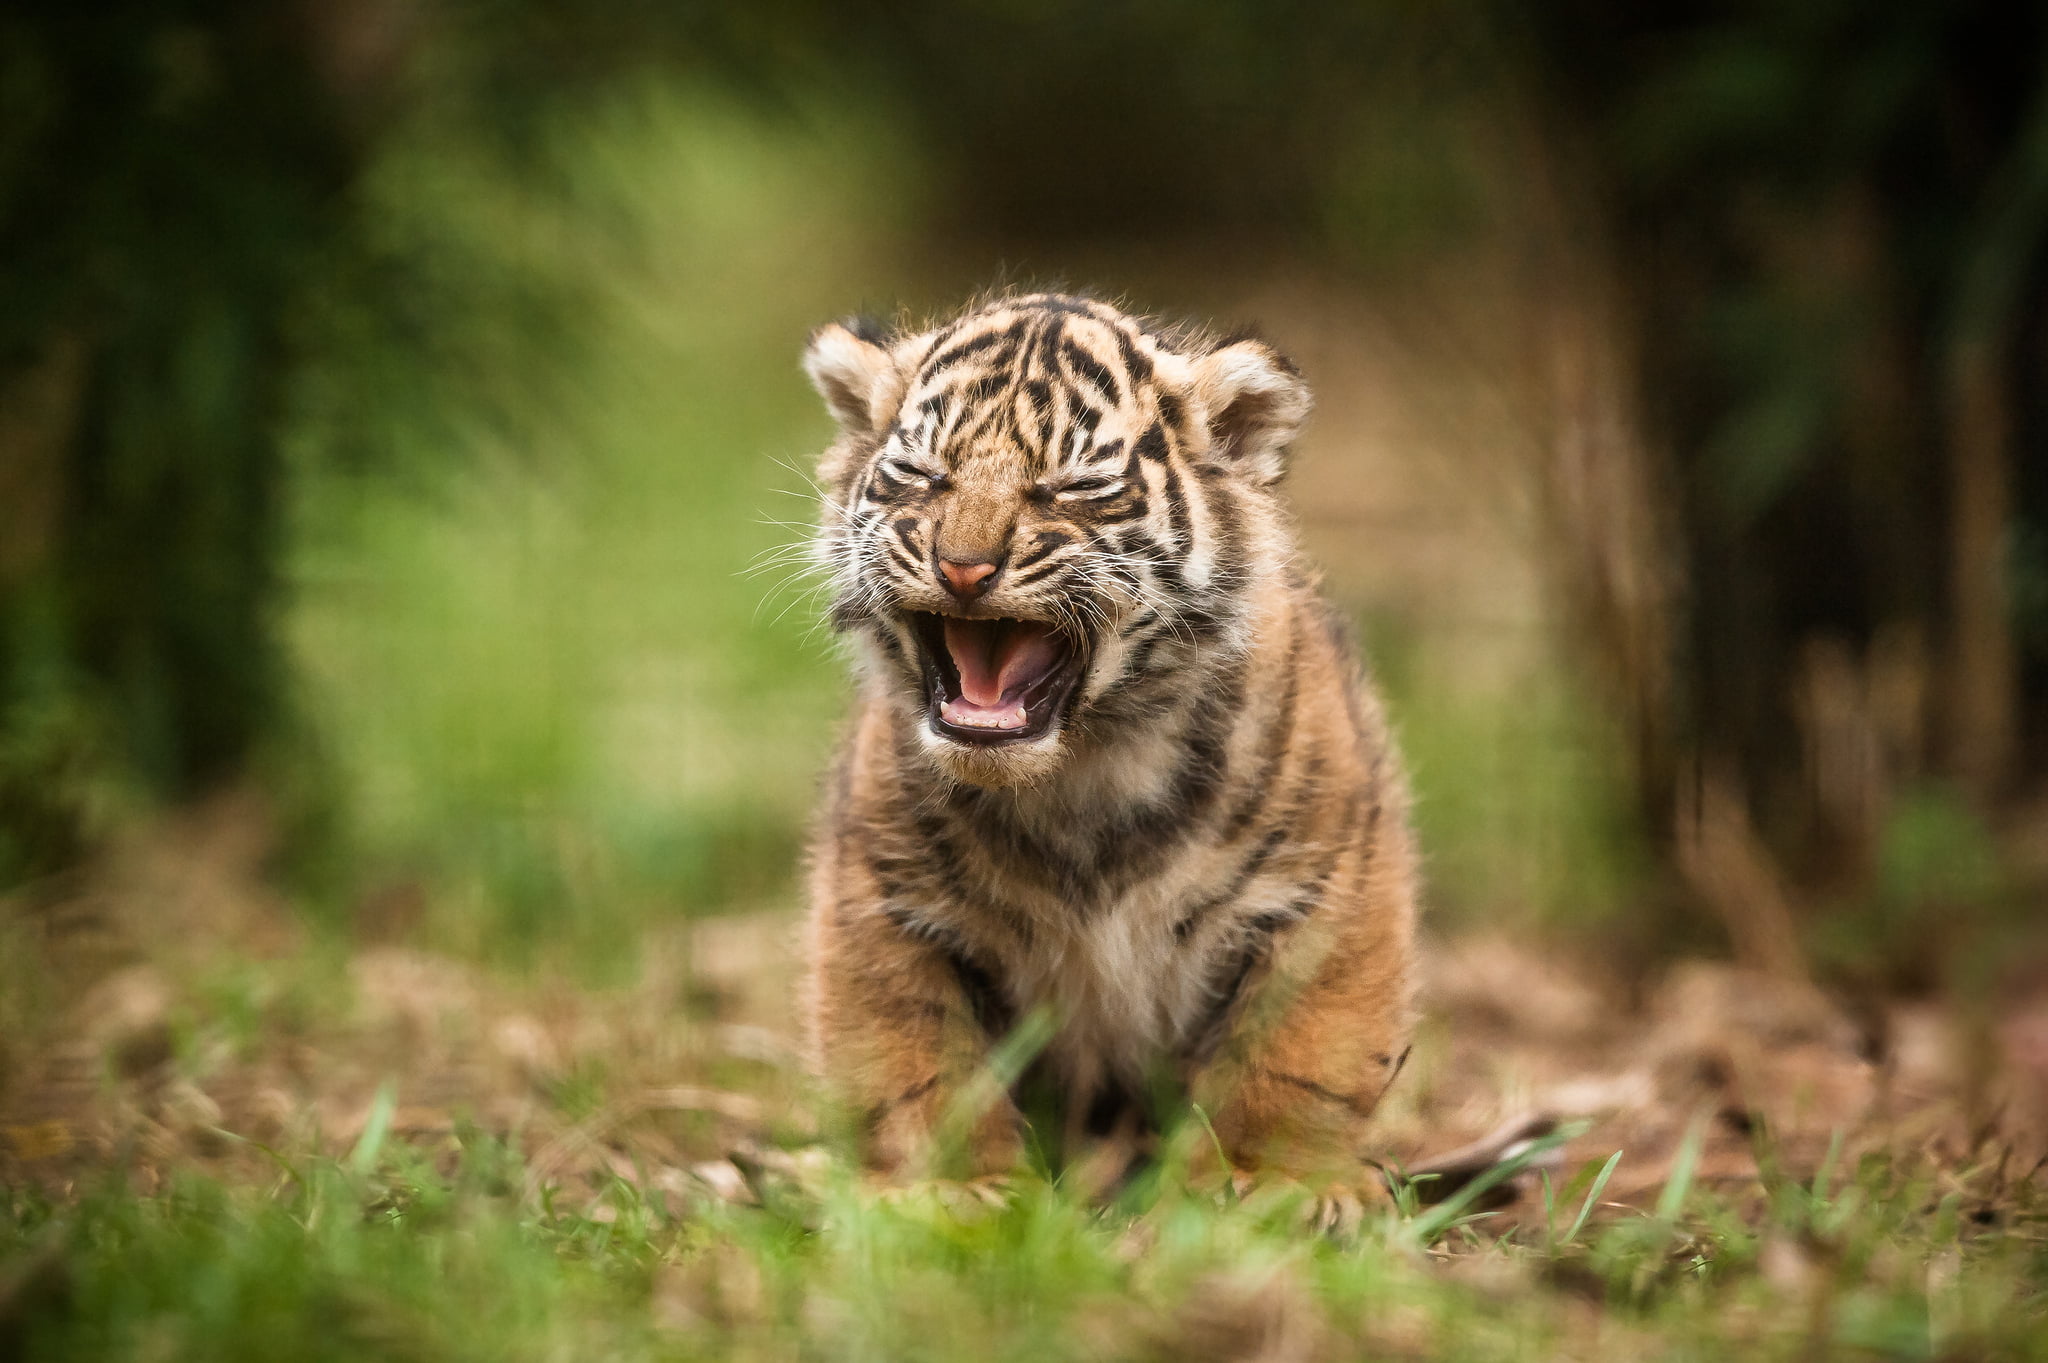 Tiger Cub Walking On Grass Hd Wallpaper | Wallpaper Flare